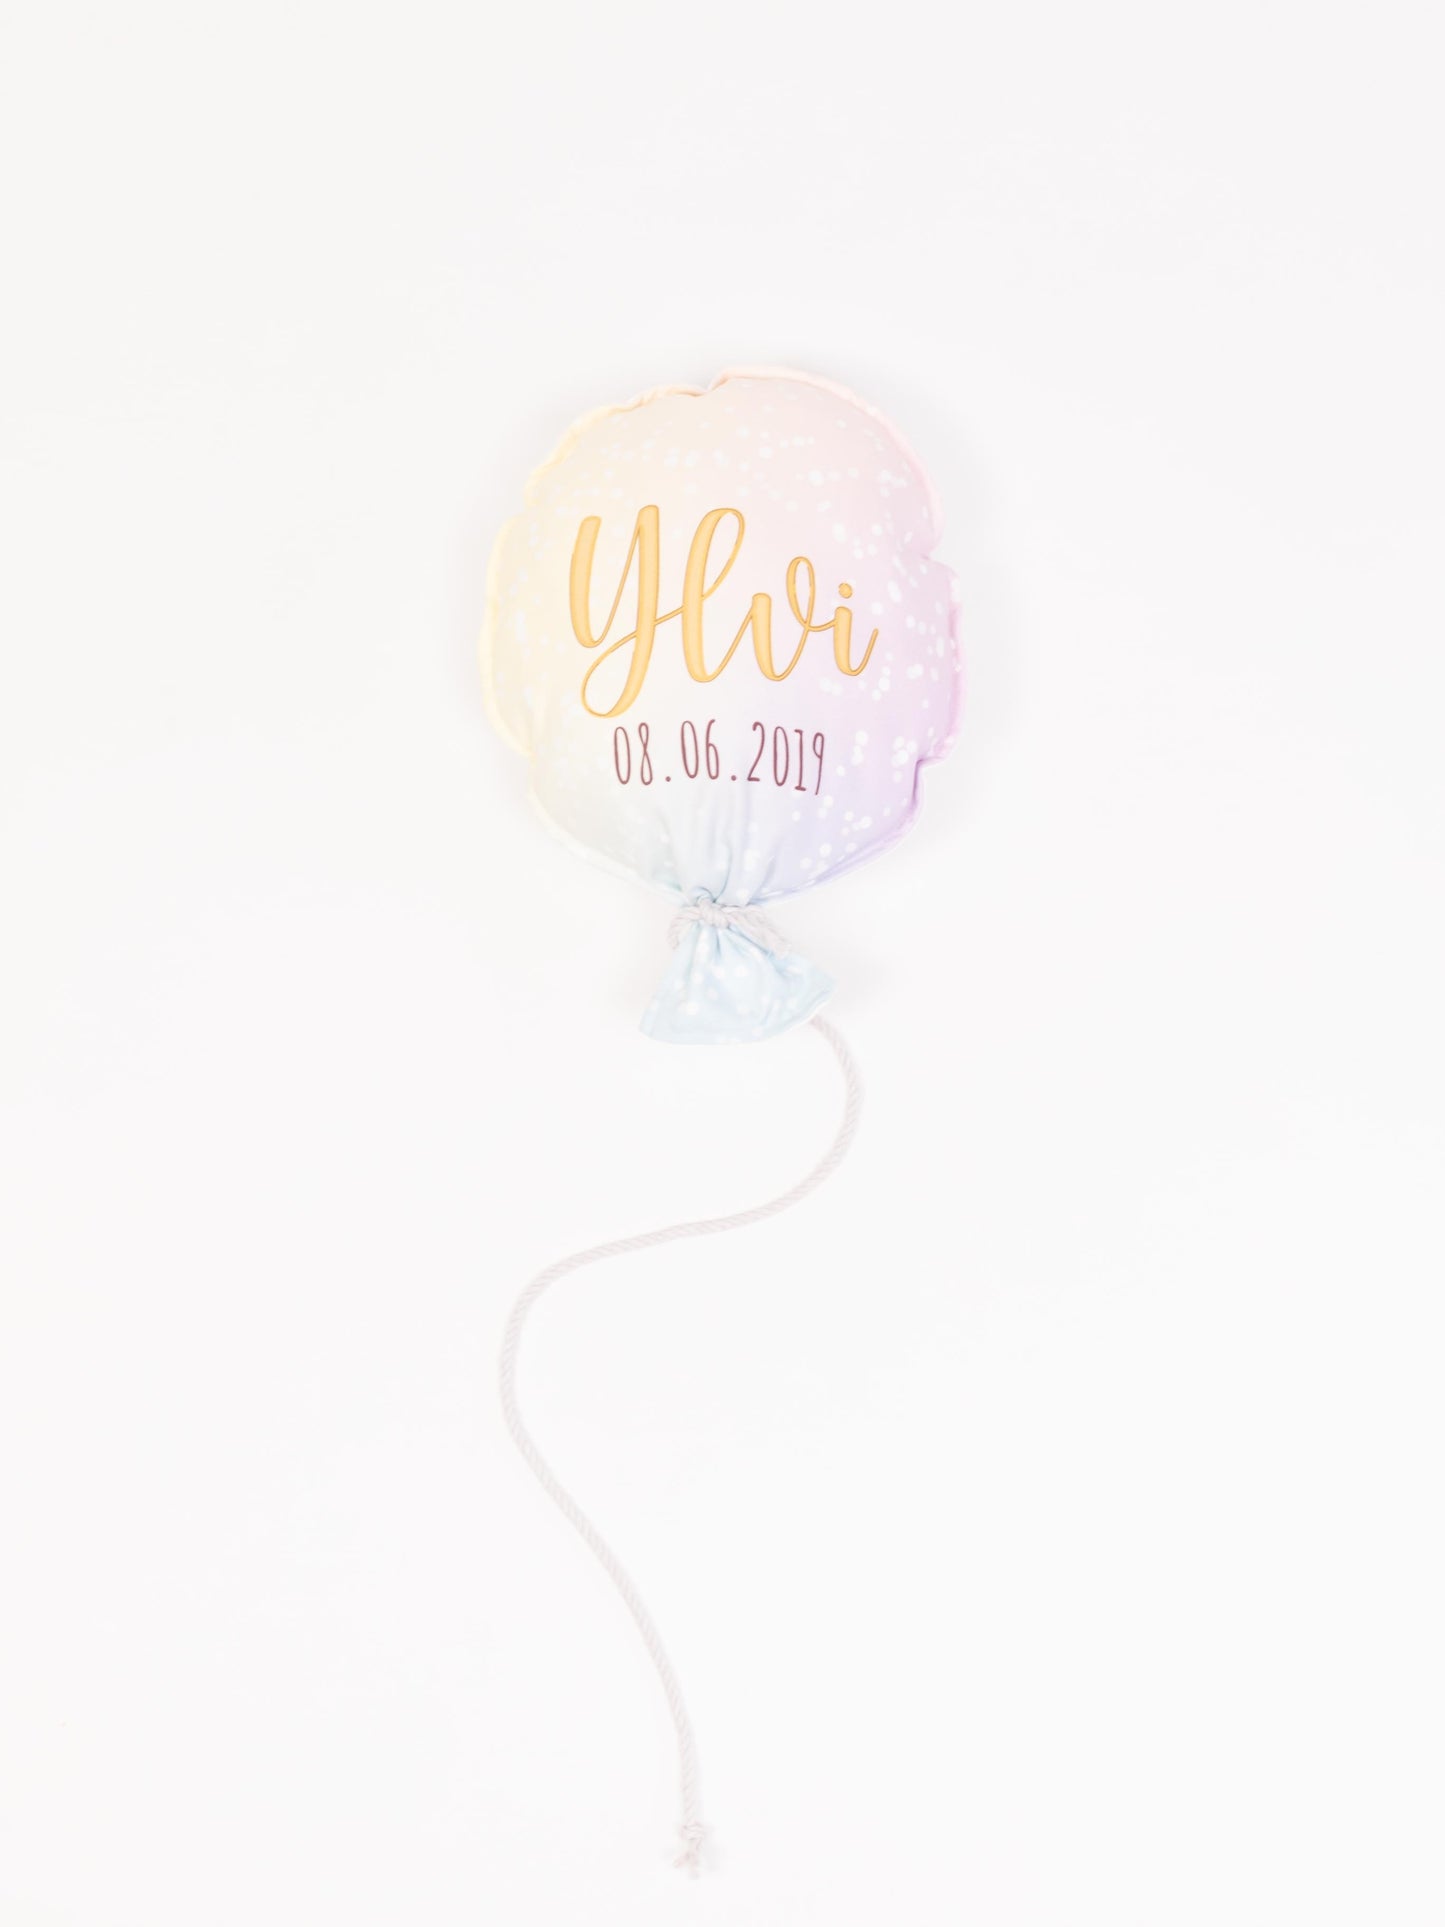 Stoff-Luftballon in sanftem Farbton personalisiert mit Namen und Geburtsdatum.